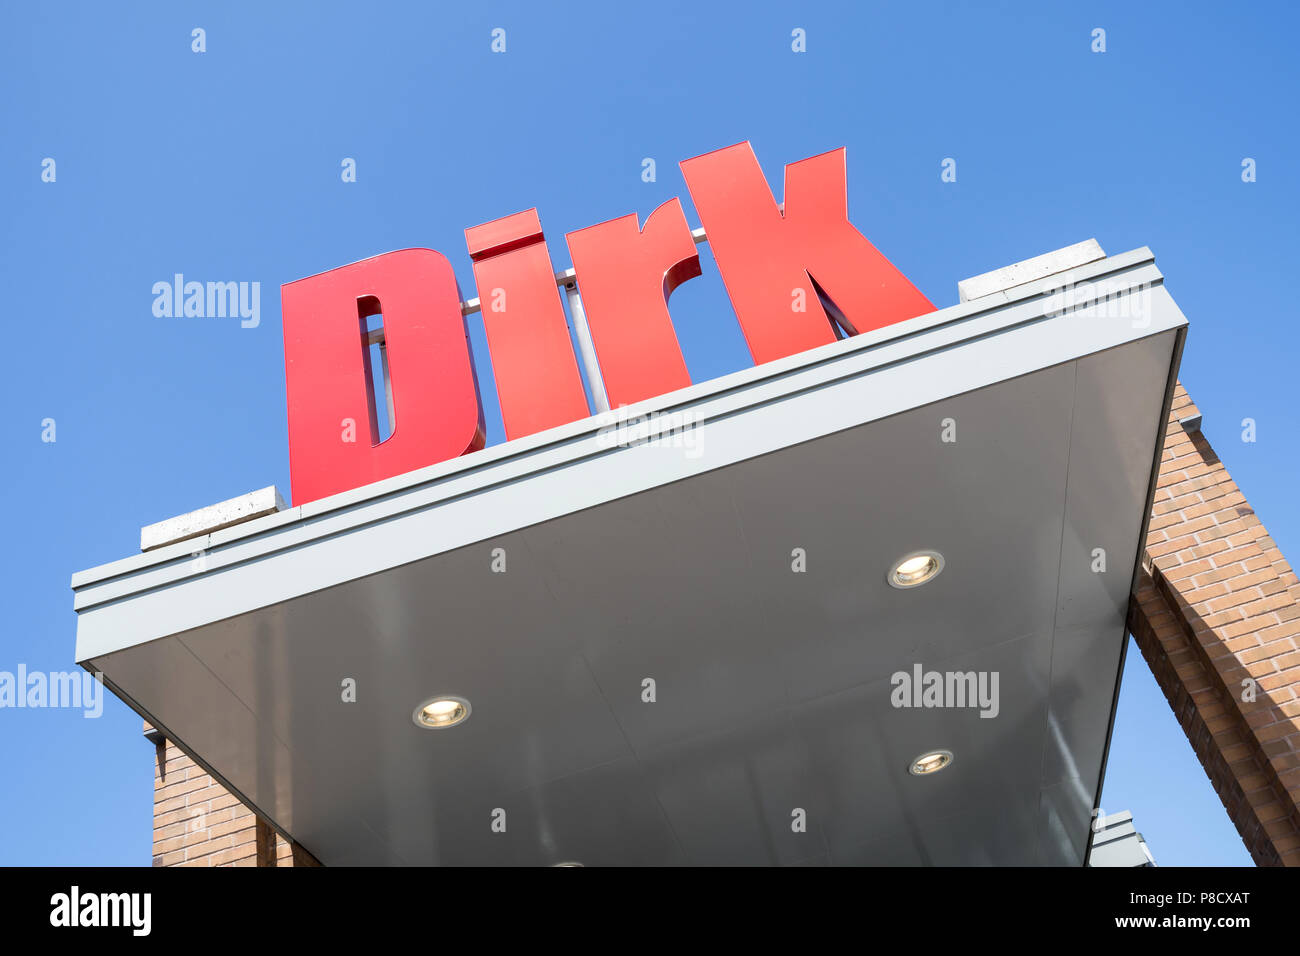 Dirk segno alla filiale. Dirk van den Broek è un olandese società di vendita al dettaglio e un membro di Superunie, un olandese organizzazione di acquisto per i supermercati. Foto Stock